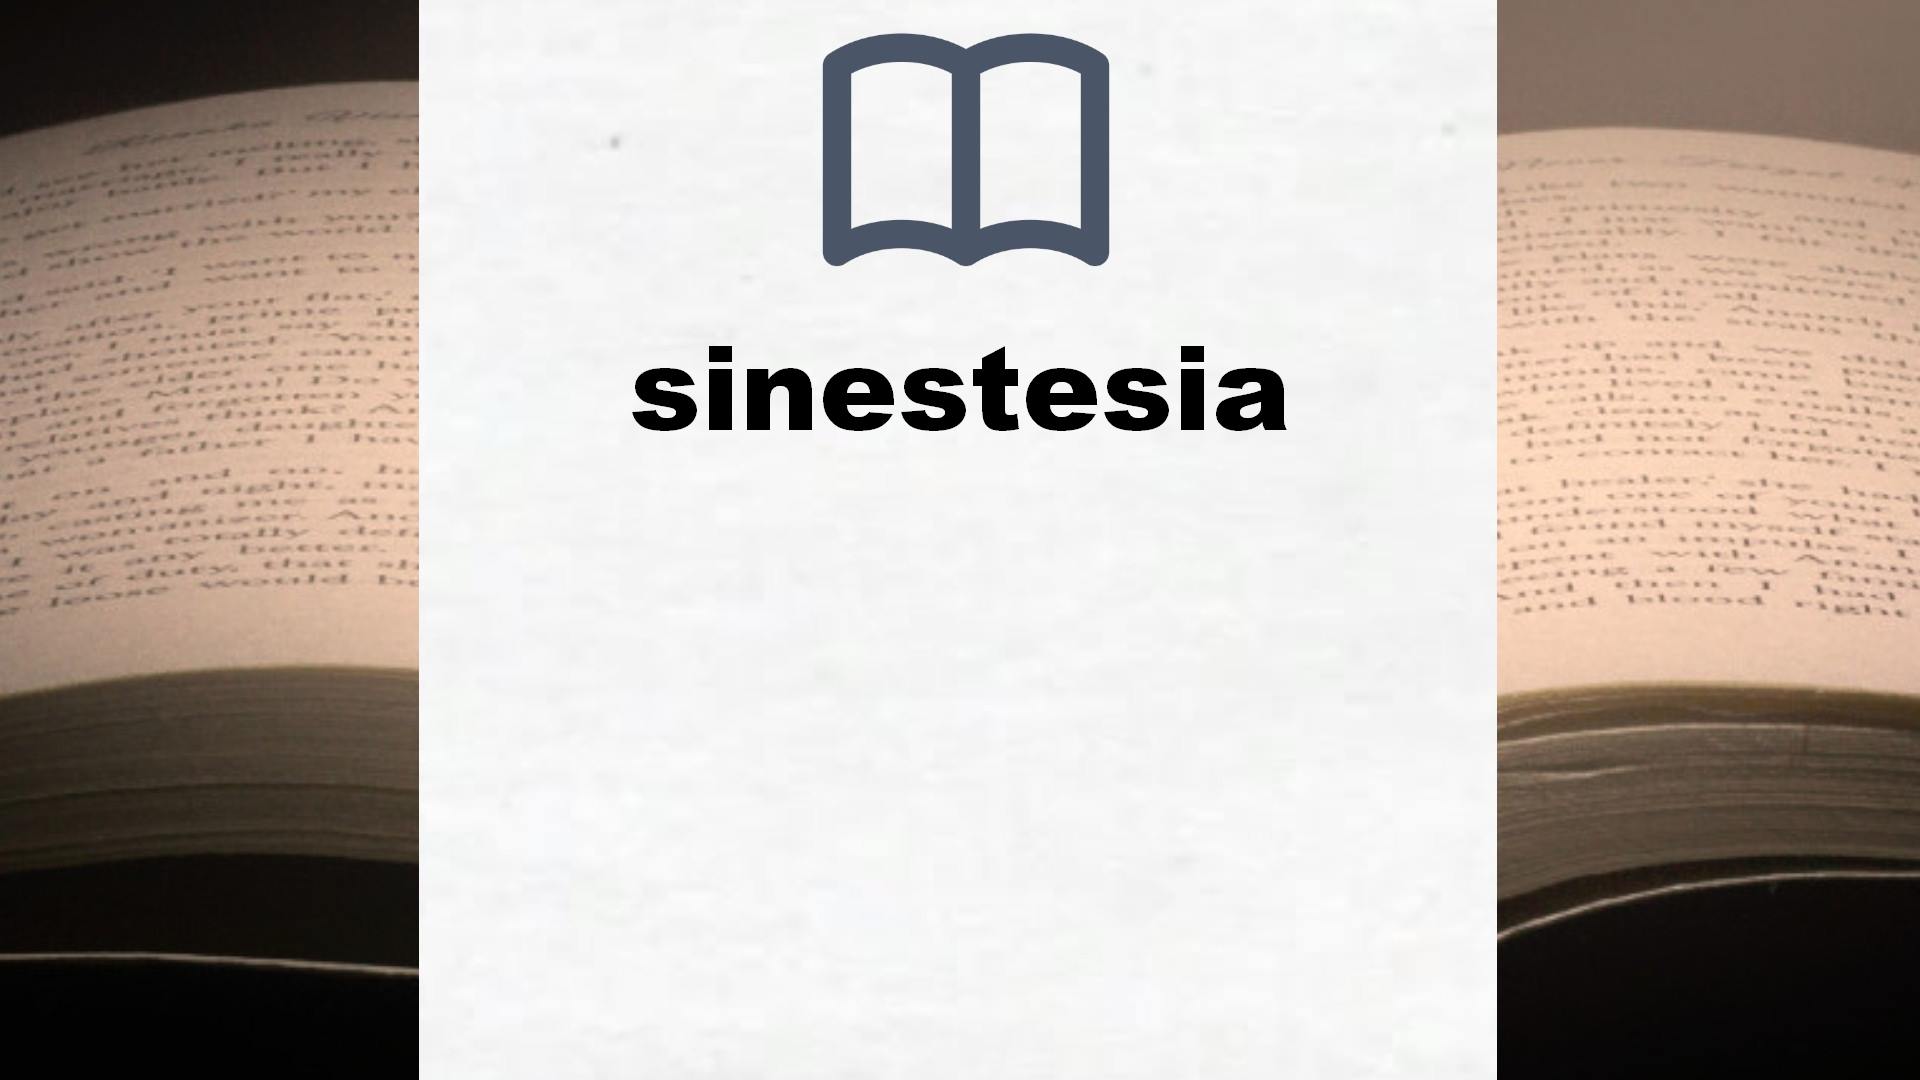 Libros sobre sinestesia